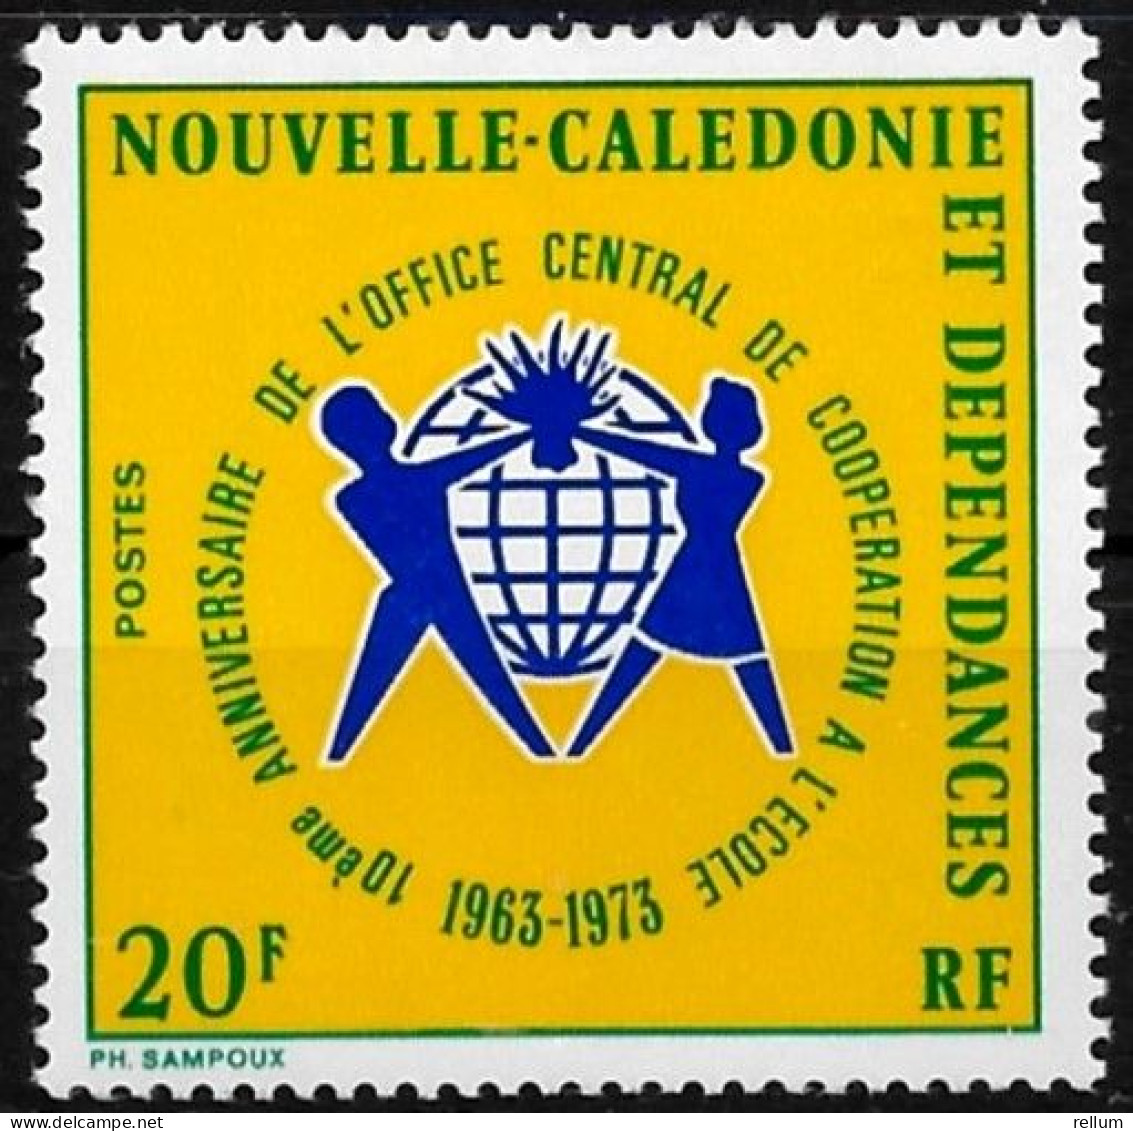 Nouvelle Calédonie 1973 - Yvert N° 389 - Michel N° 541  ** - Neufs